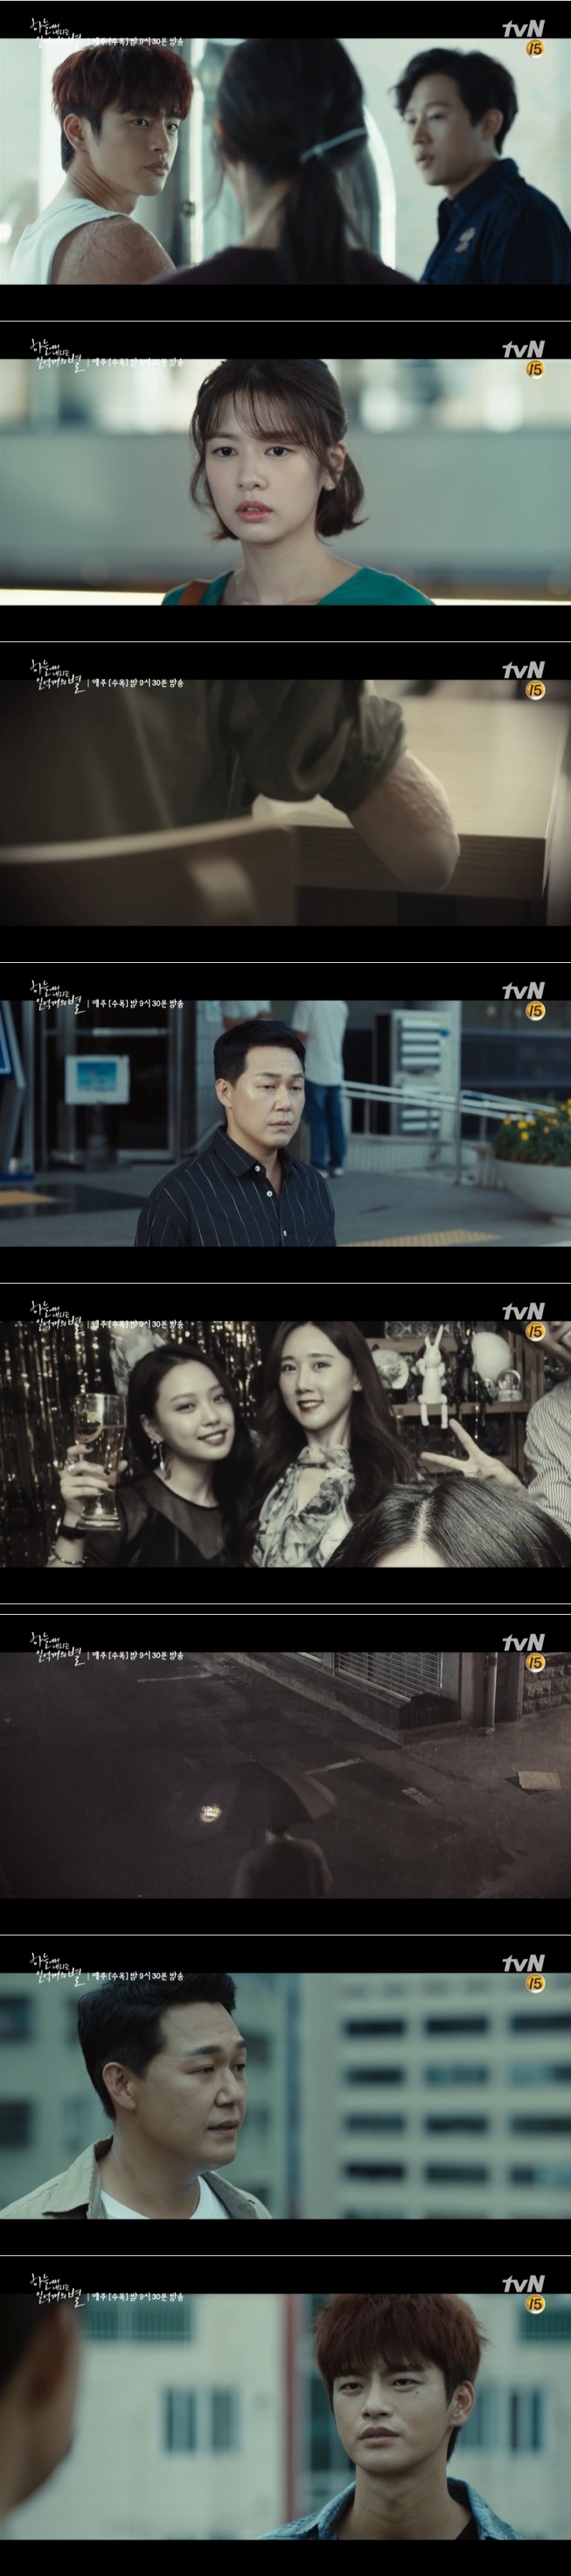 10일 방송된 tvN 수목드라마 '하늘에서 내리는 일억개의 별' 3회에서 진강(정소민)이 무영(서인국)의 어깨에 난 커다란 화상흉터를 보고 미묘한 심경의 변화를 겪는 가운데 유진국(박성웅)은 여대생 살인사건 범인이 김무영임을 확인하는 충격 반전이 그려졌다. 사진=tvN 방송 캡처